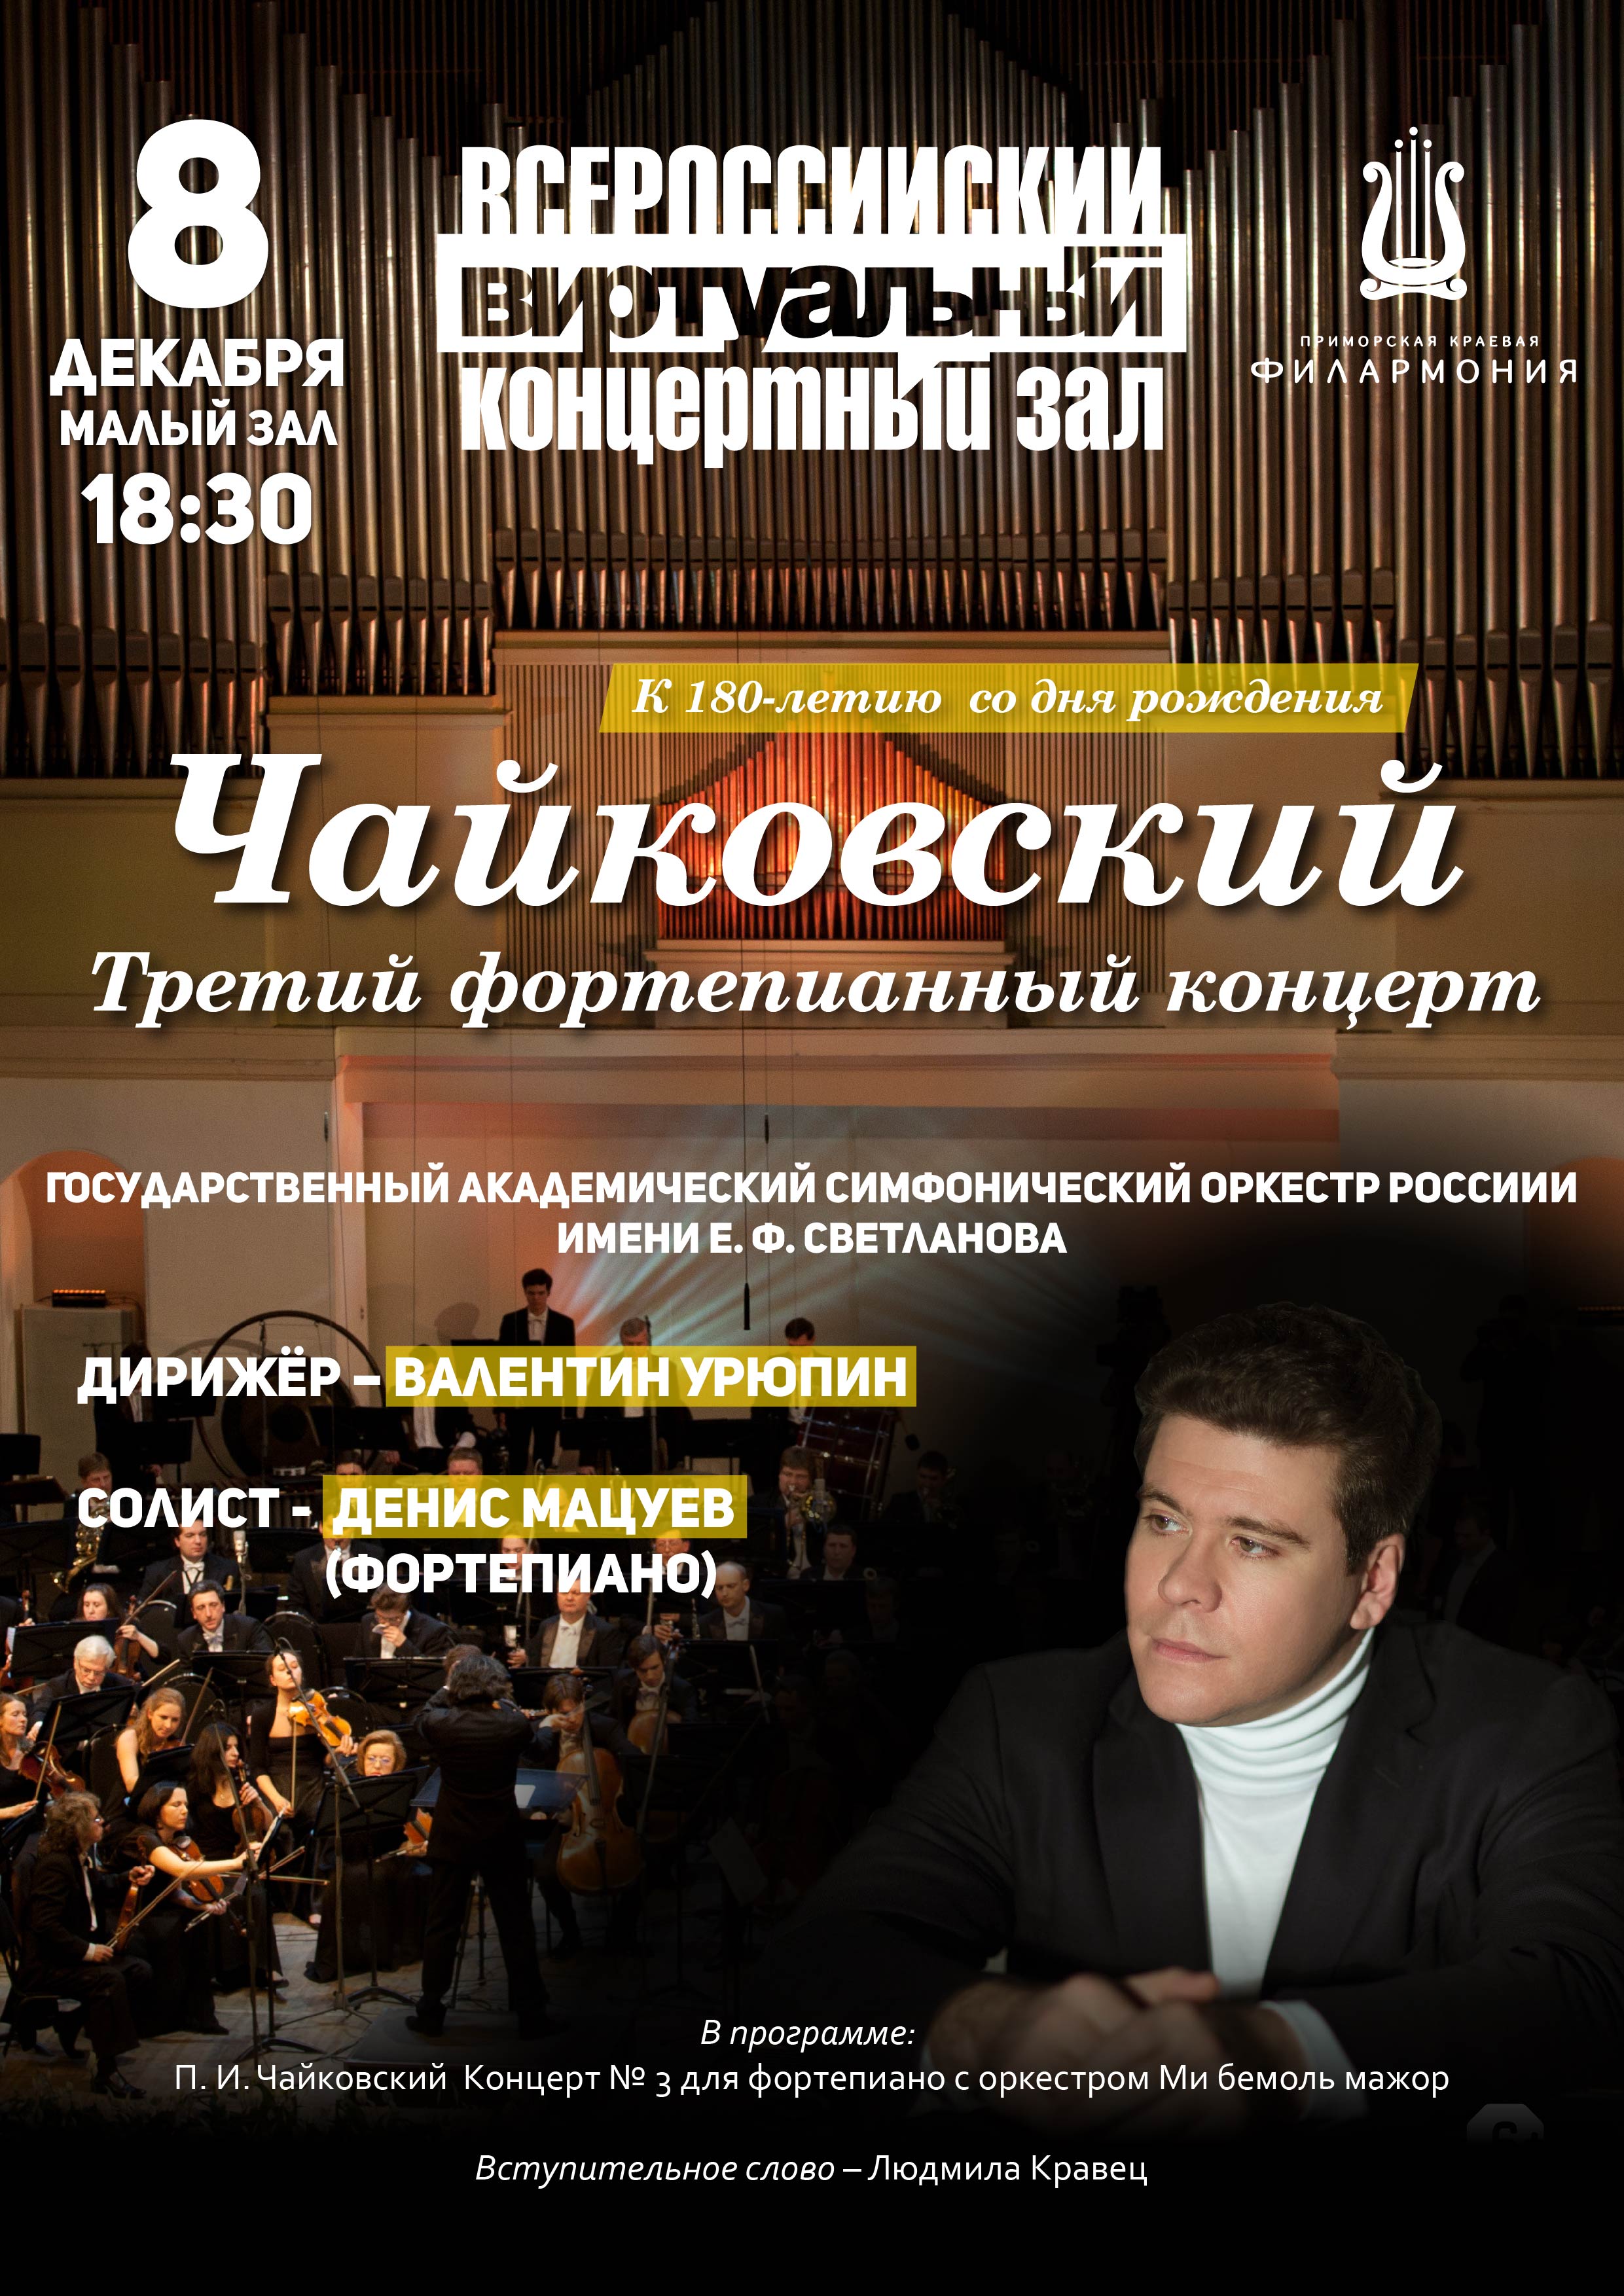 8 декабря  Виртуальный концертный зал  Концертная программа  «Чайковский. Третий фортепианный концерт» К 180-летию  со дня рождения